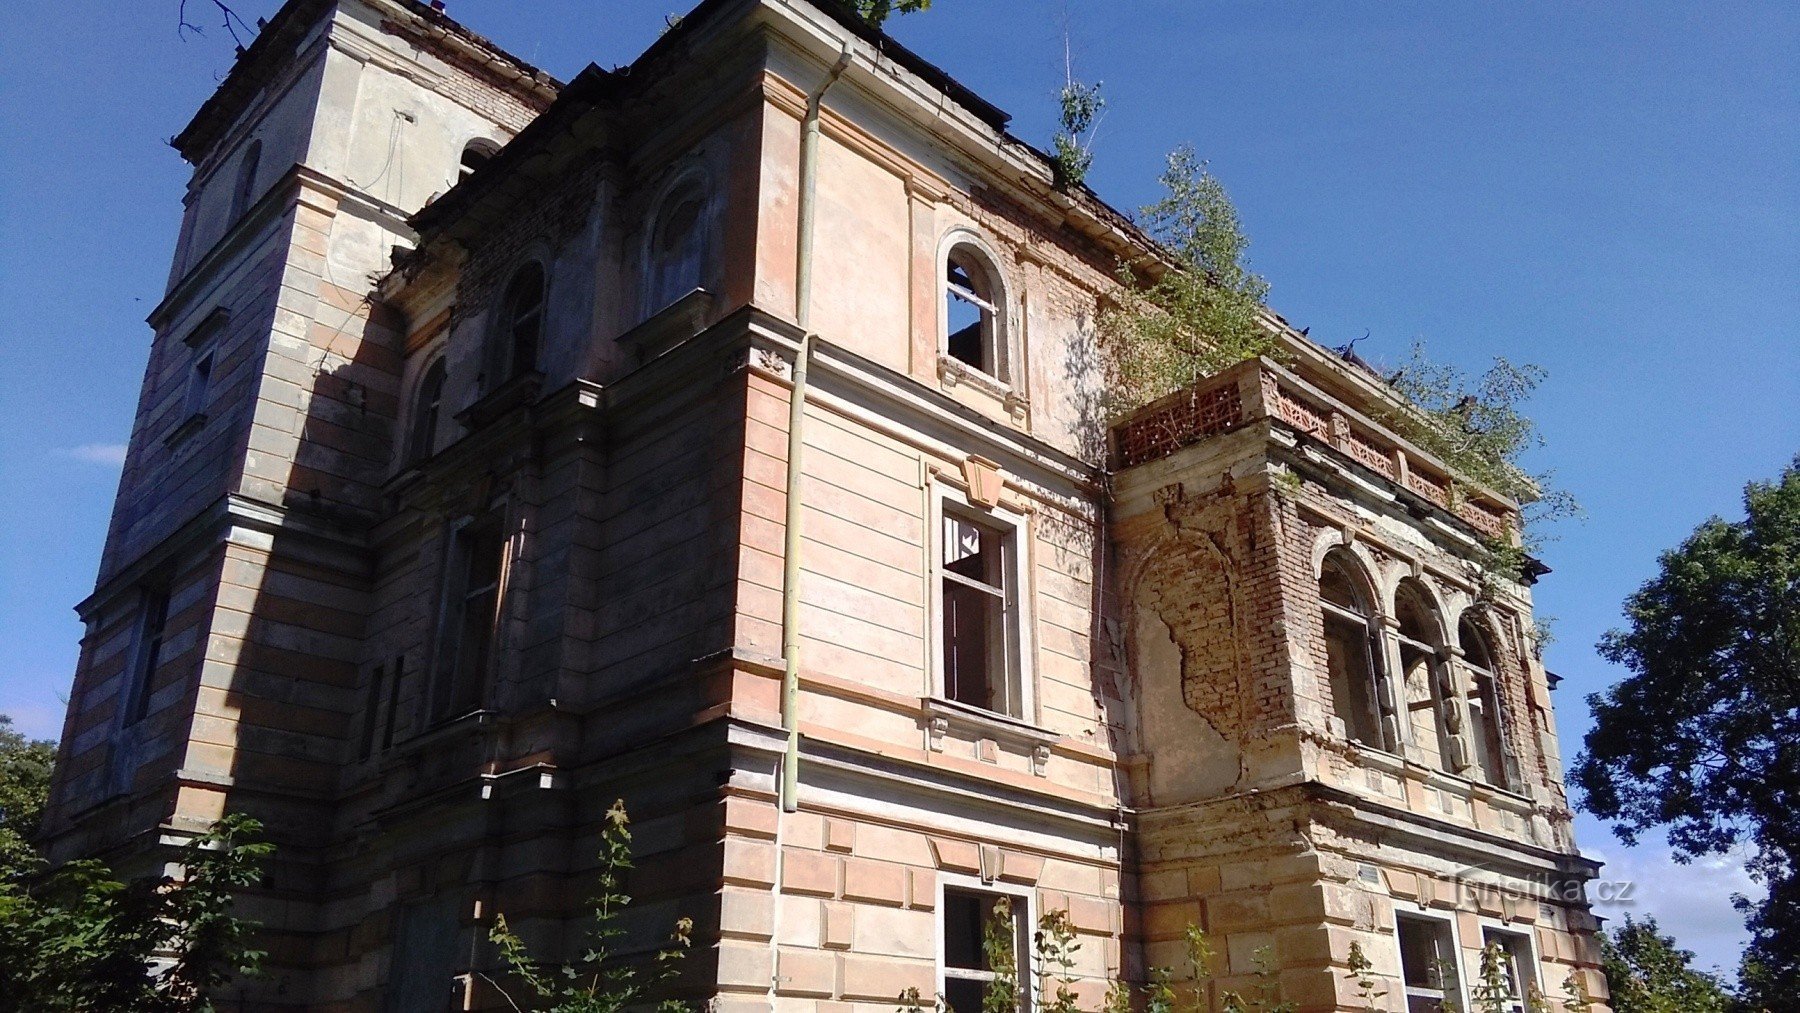 Dubí - 别墅，现在是废墟，曾经是制造商 Tschinkel 的代表住宅